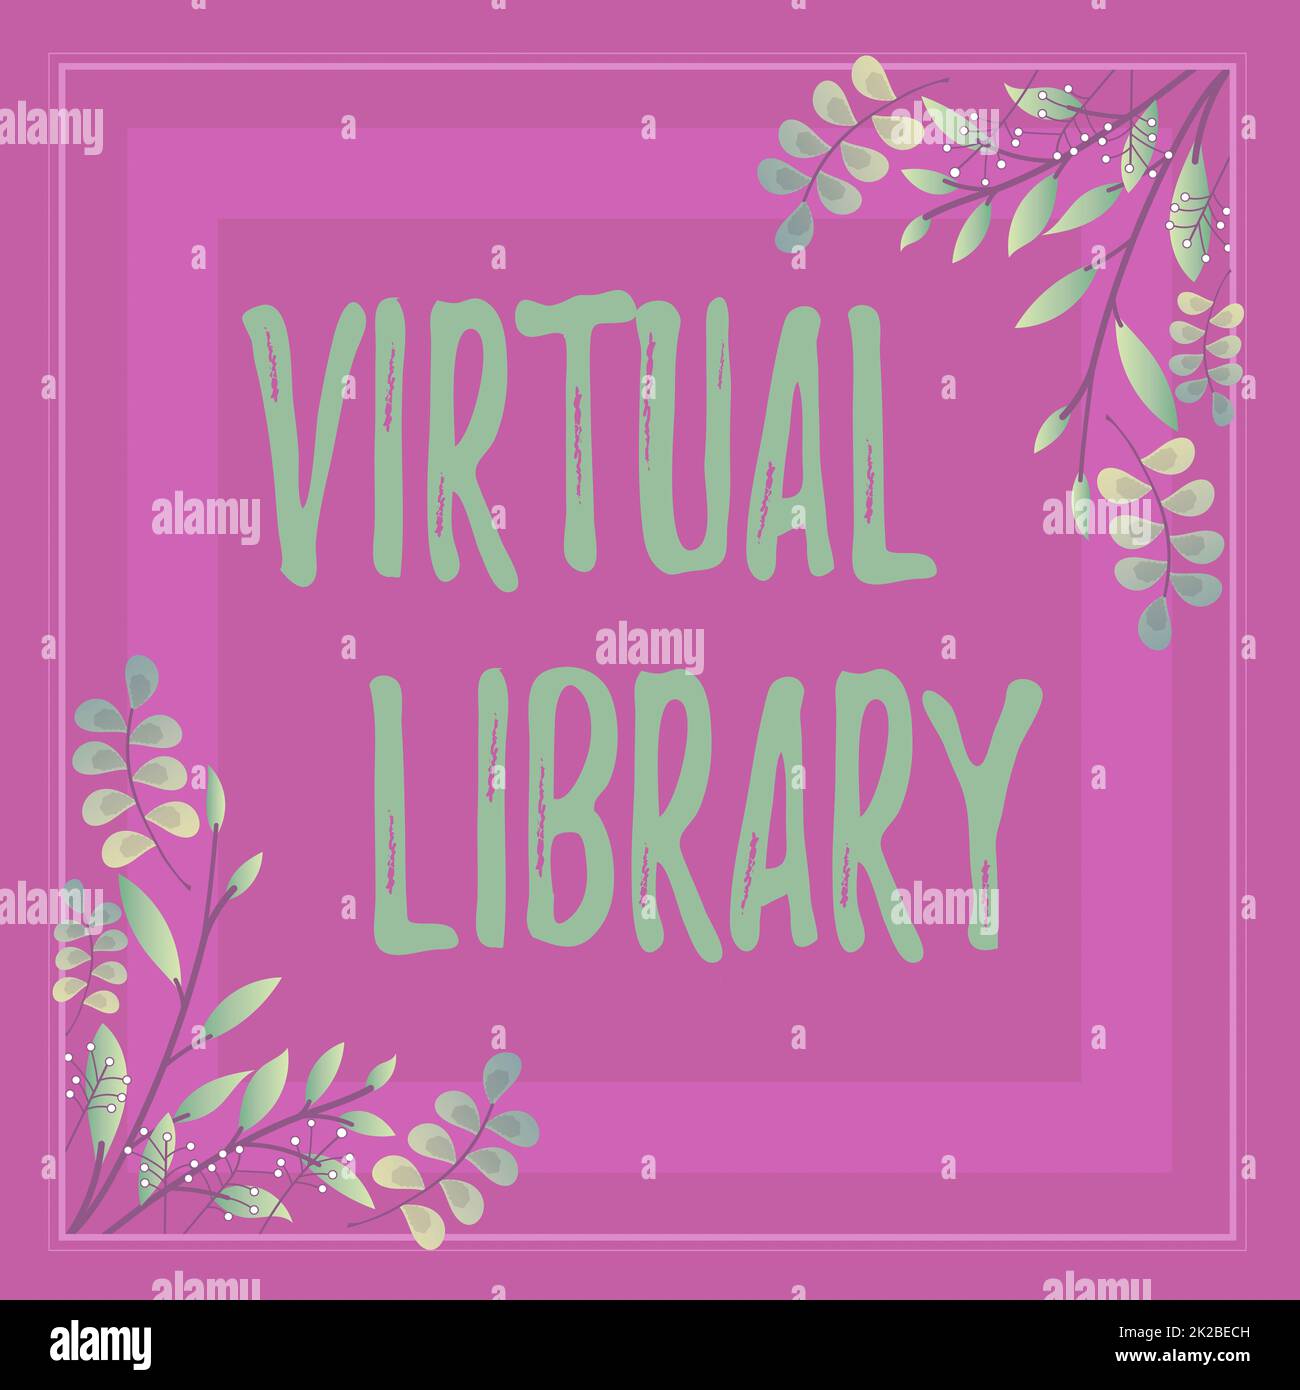 Text zeigt Inspiration Virtuelle Bibliothek, Business Ansatz Sammlung von Ressourcen auf Computersystemen Rahmen mit bunten Blumen geschmückt Stockfoto